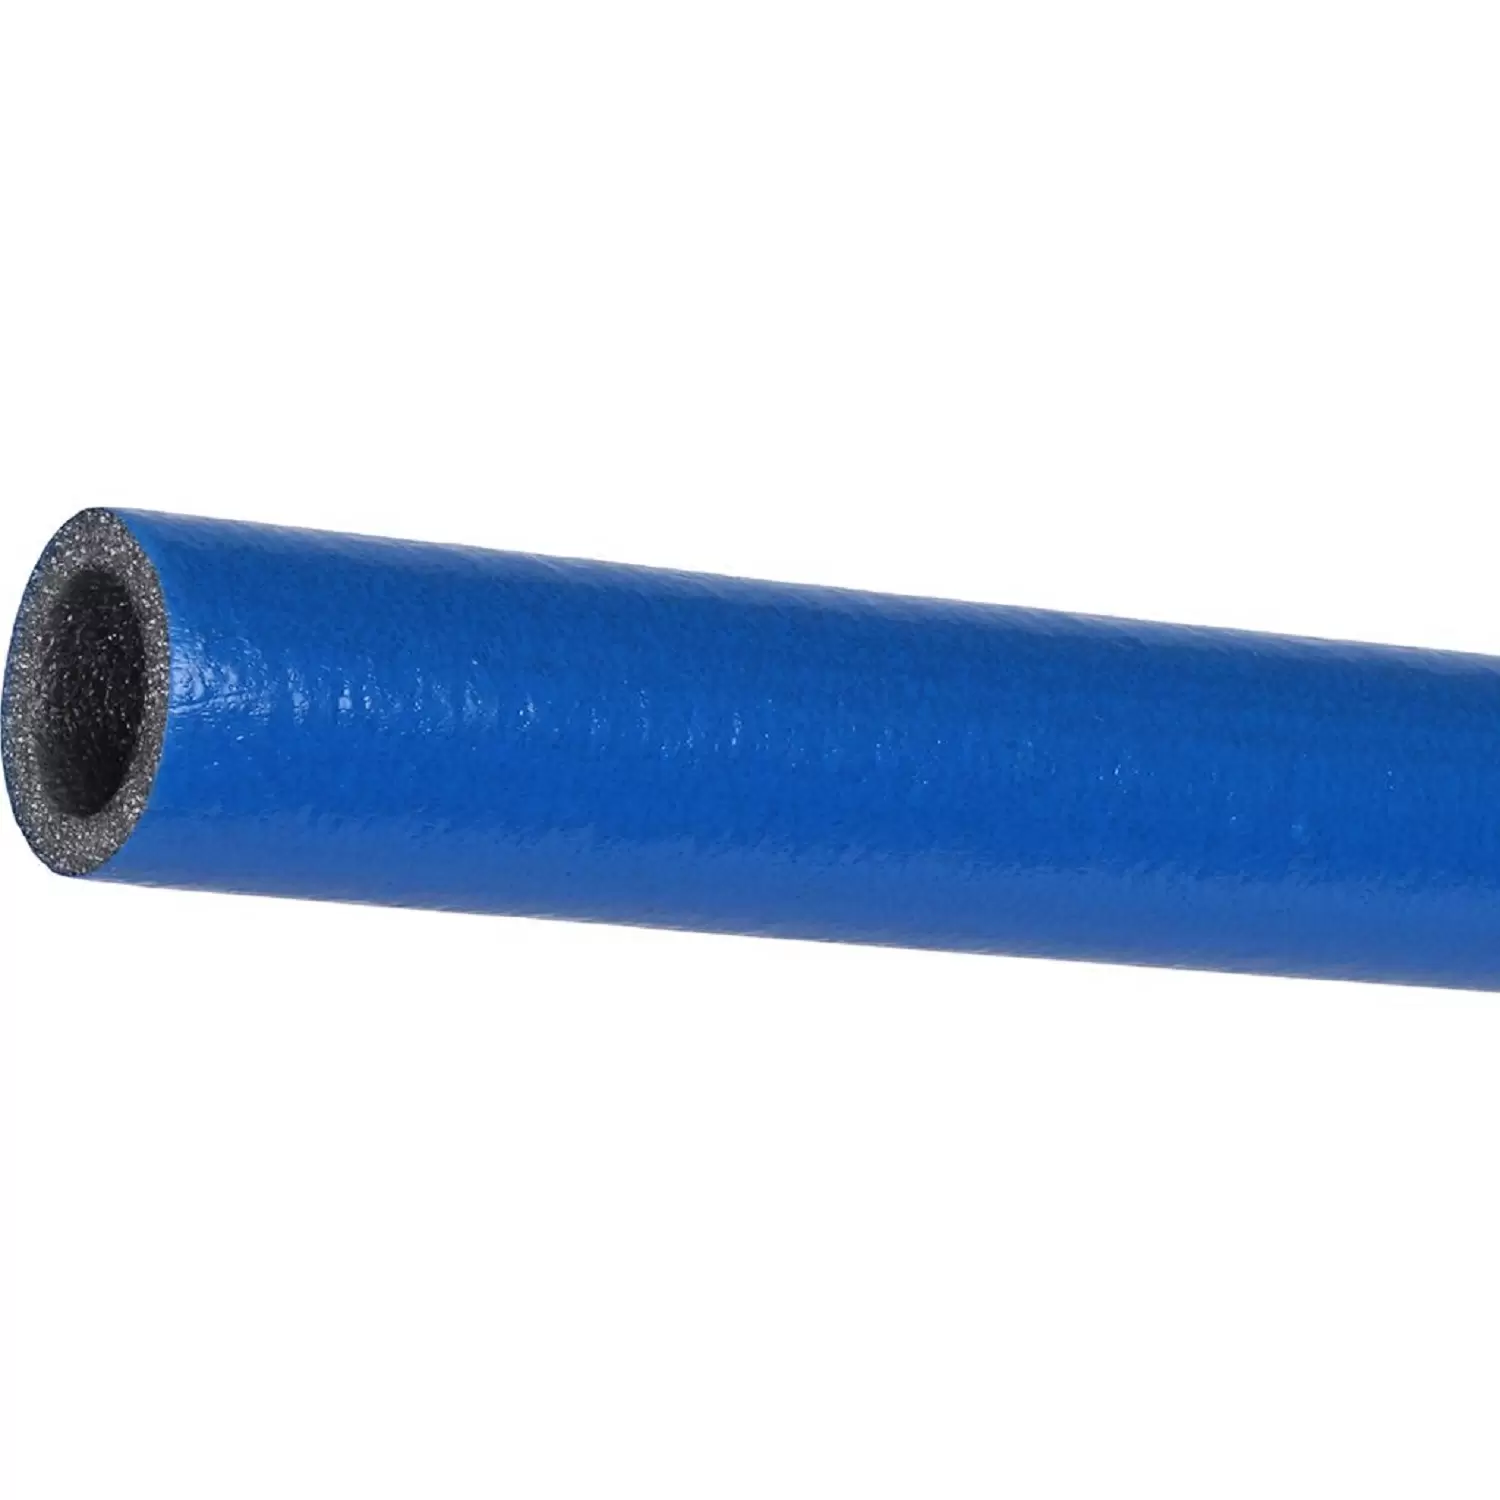 Теплоизоляция Энергофлекс супер протект 18/6 для труб диаметром 16 мм синяя, трубка 2 м